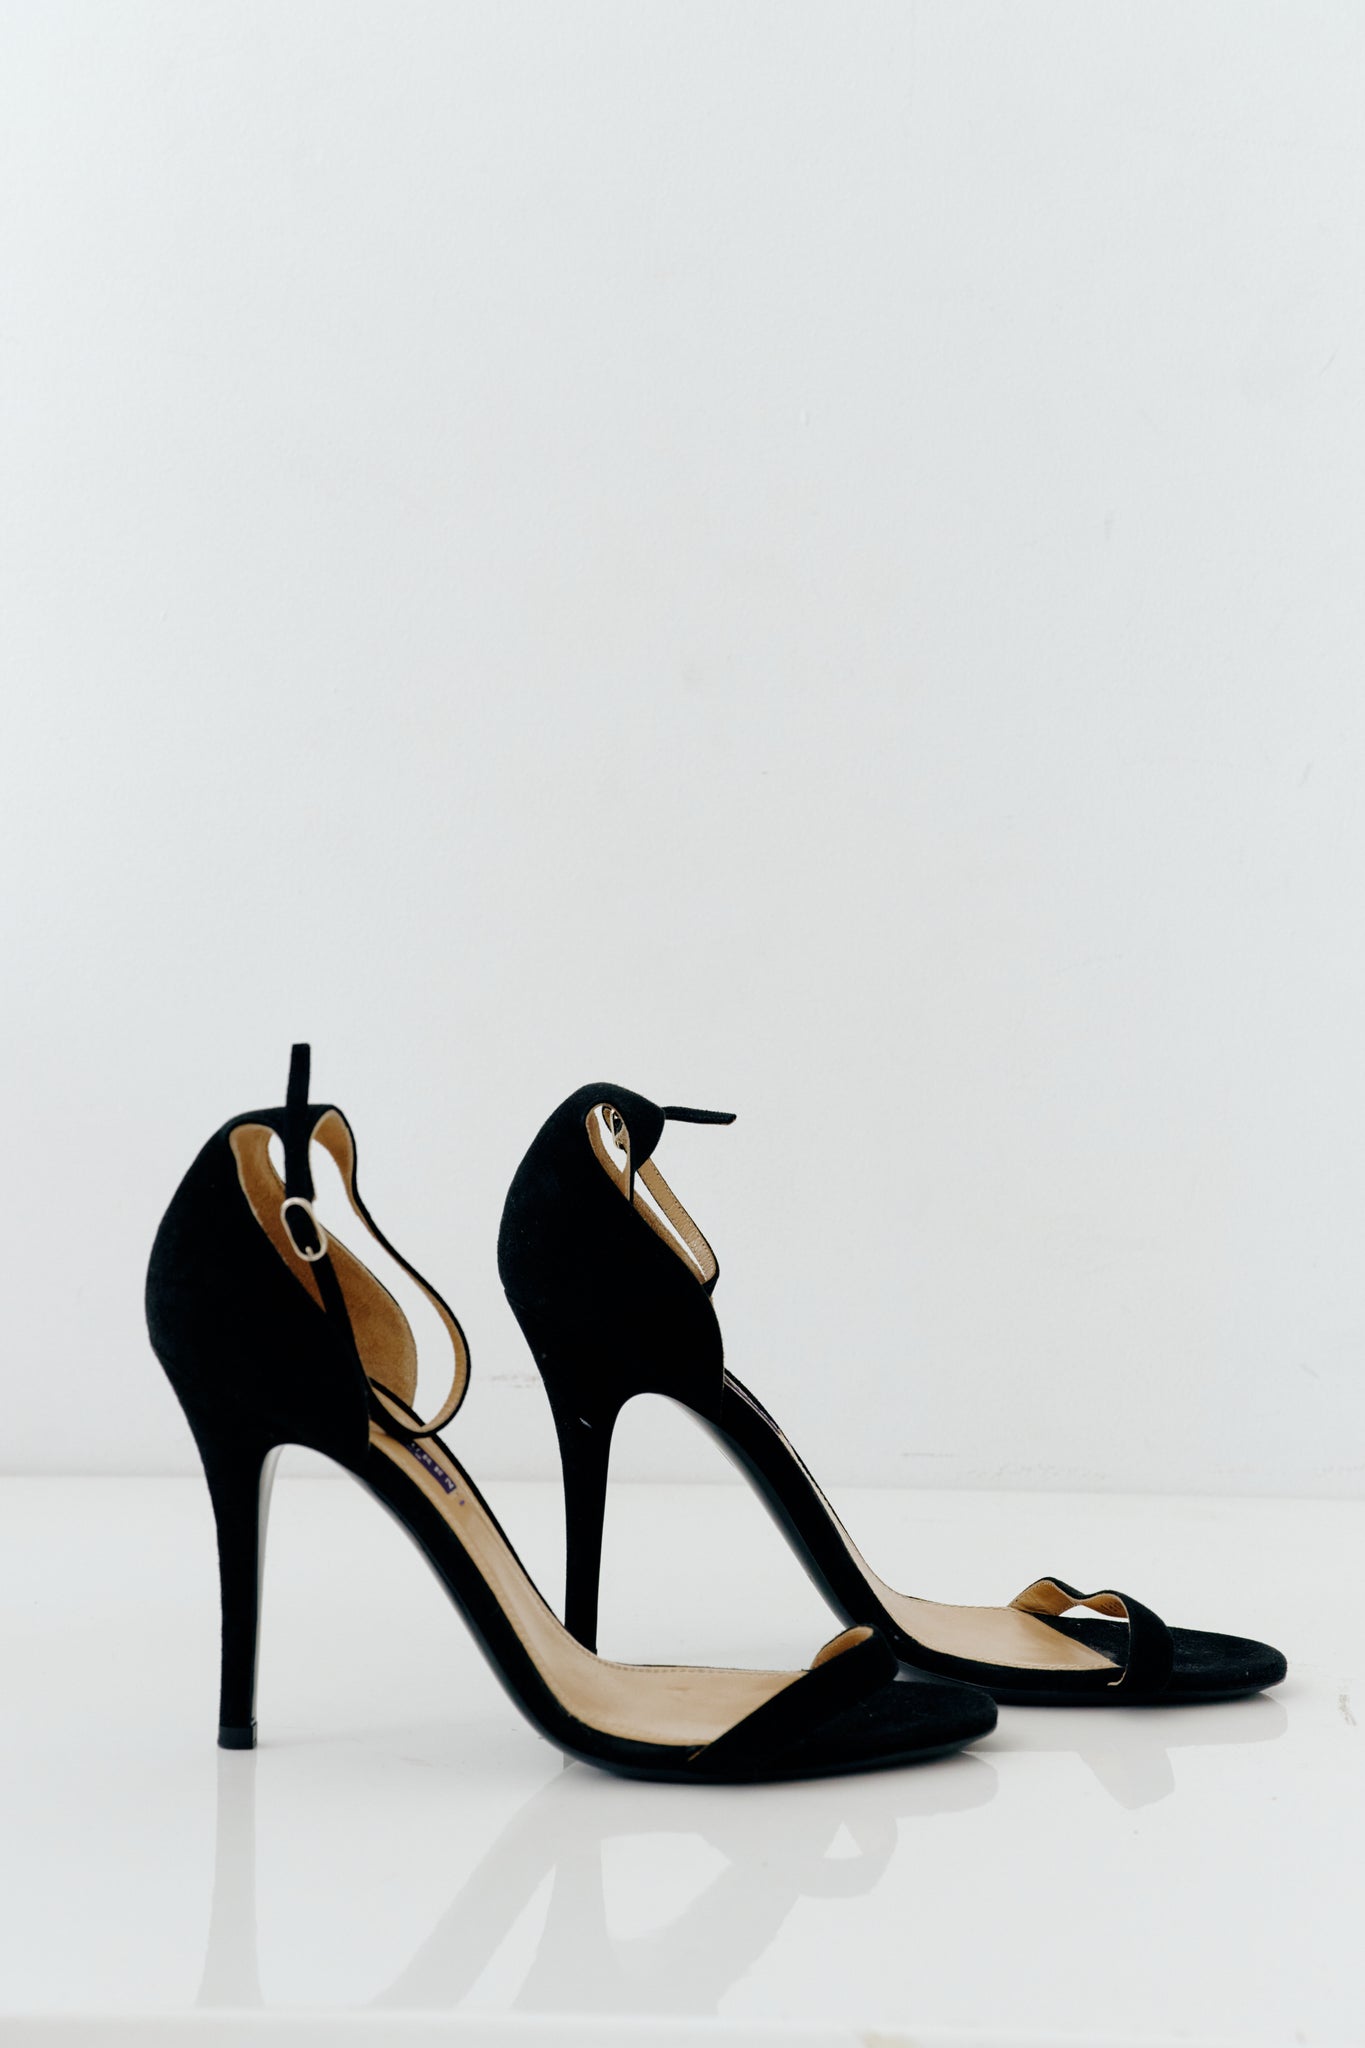 Black Heels - Suede Heels - Platform Heels - High Heel Sandals - Lulus